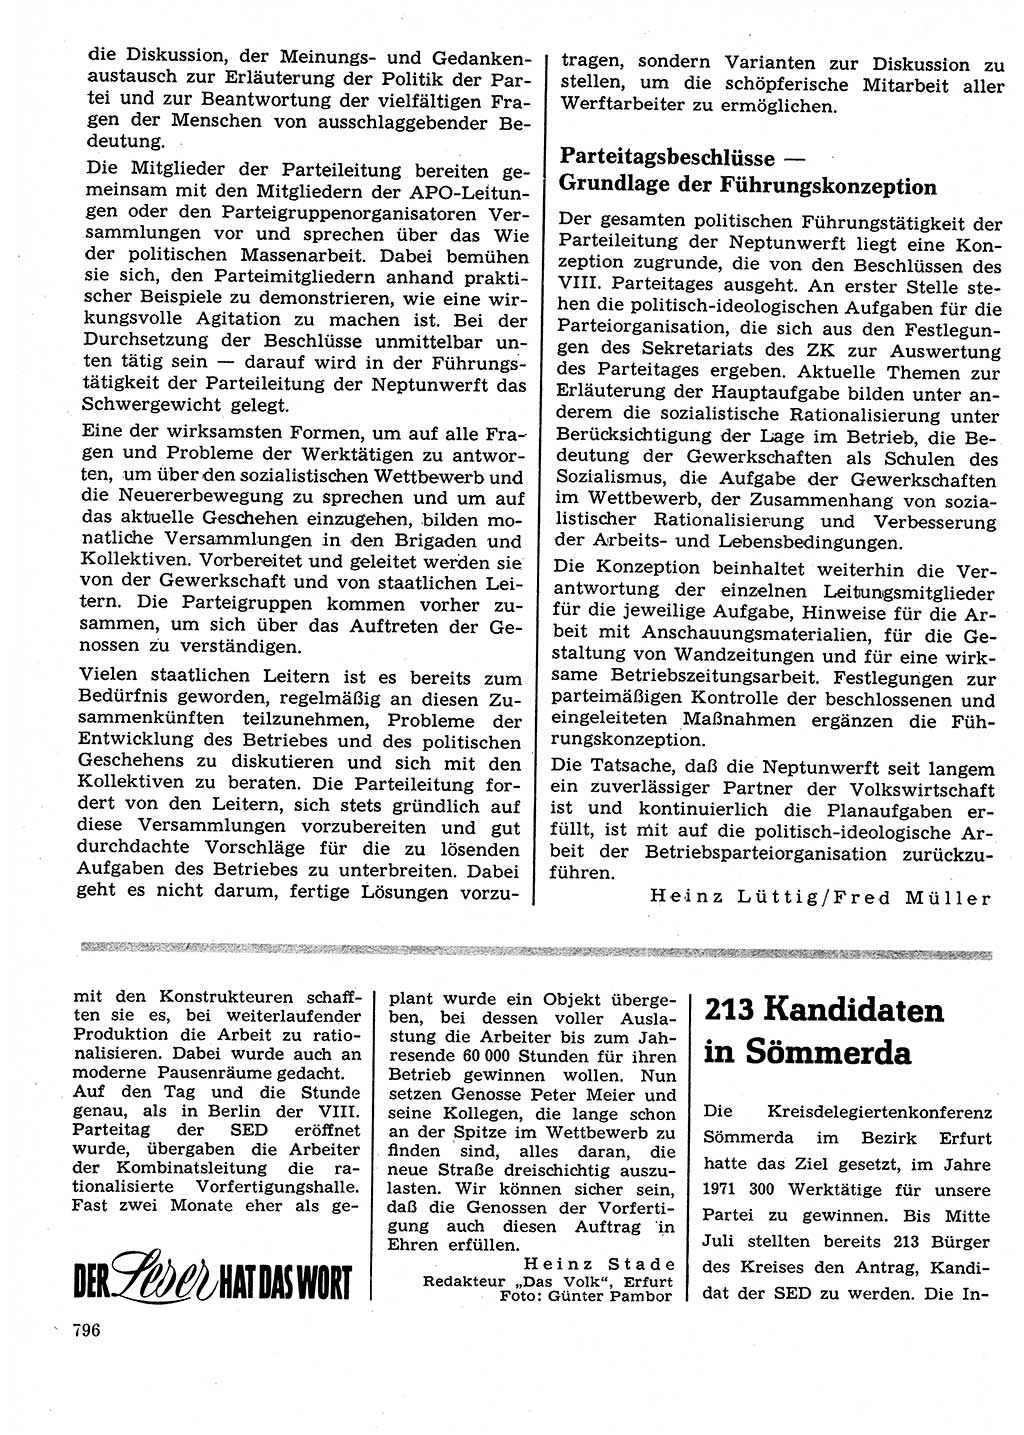 Neuer Weg (NW), Organ des Zentralkomitees (ZK) der SED (Sozialistische Einheitspartei Deutschlands) für Fragen des Parteilebens, 26. Jahrgang [Deutsche Demokratische Republik (DDR)] 1971, Seite 796 (NW ZK SED DDR 1971, S. 796)